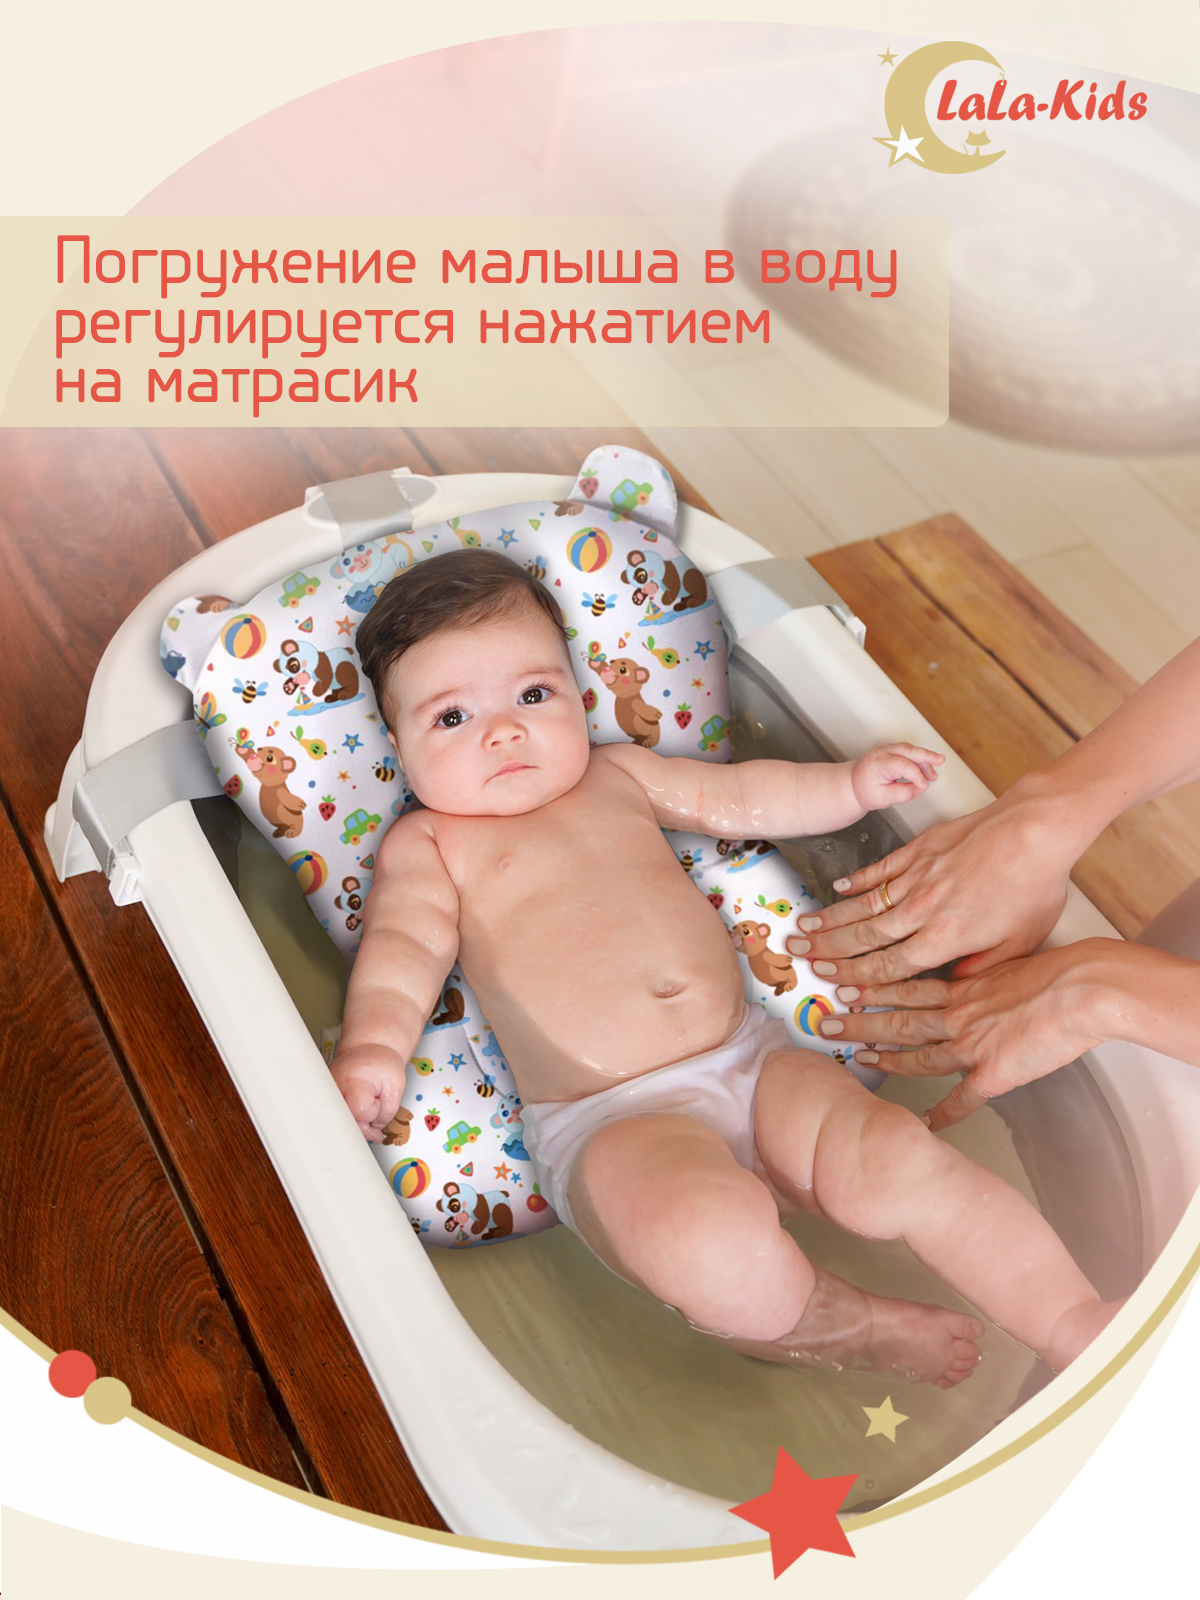 Матрас LaLa-Kids для купания новорожденных - фото 11